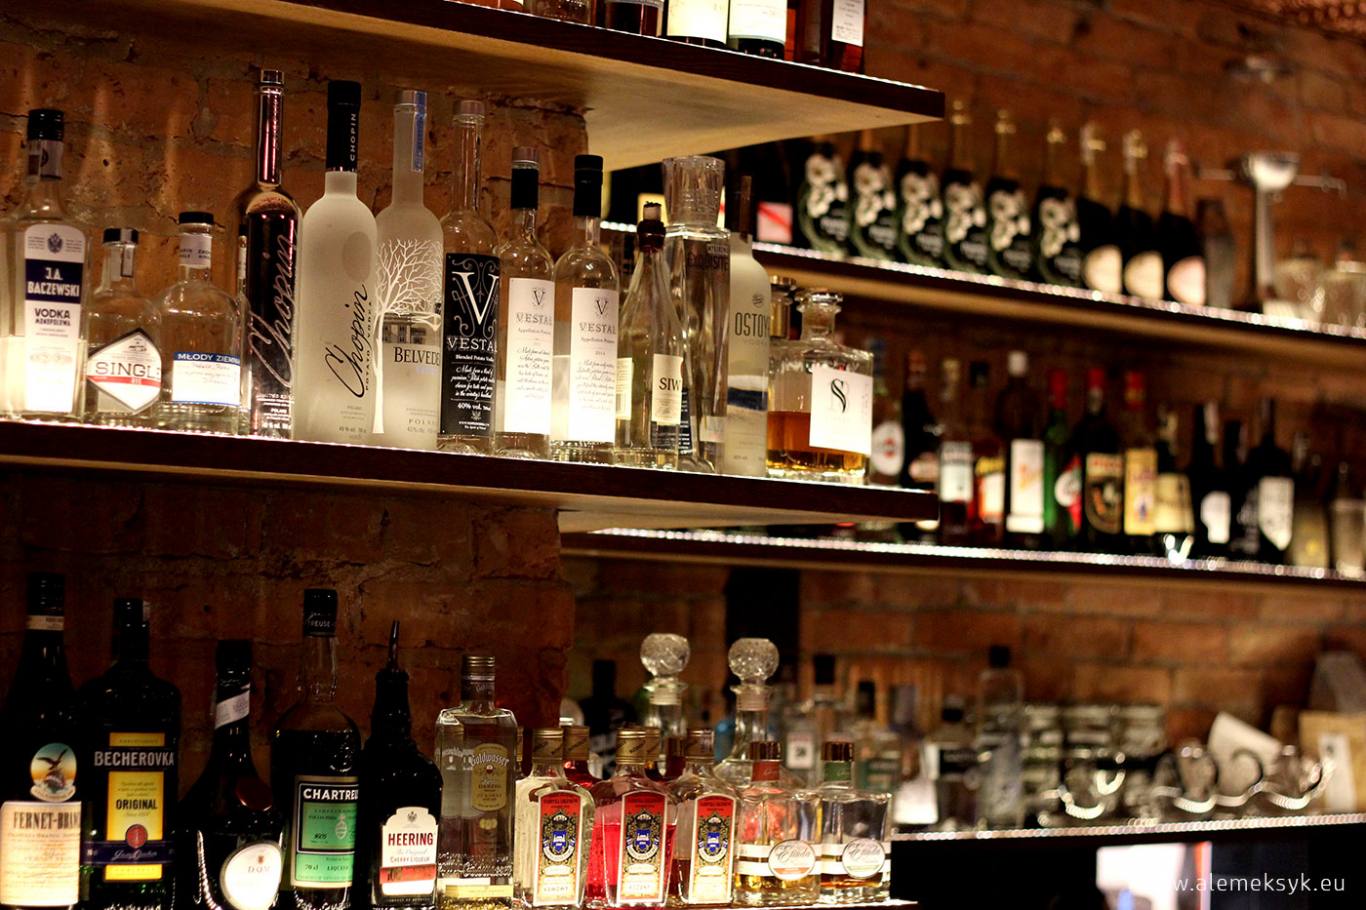 Woda ognista - cocktail bar w Warszawie z przedwojennym klimatem